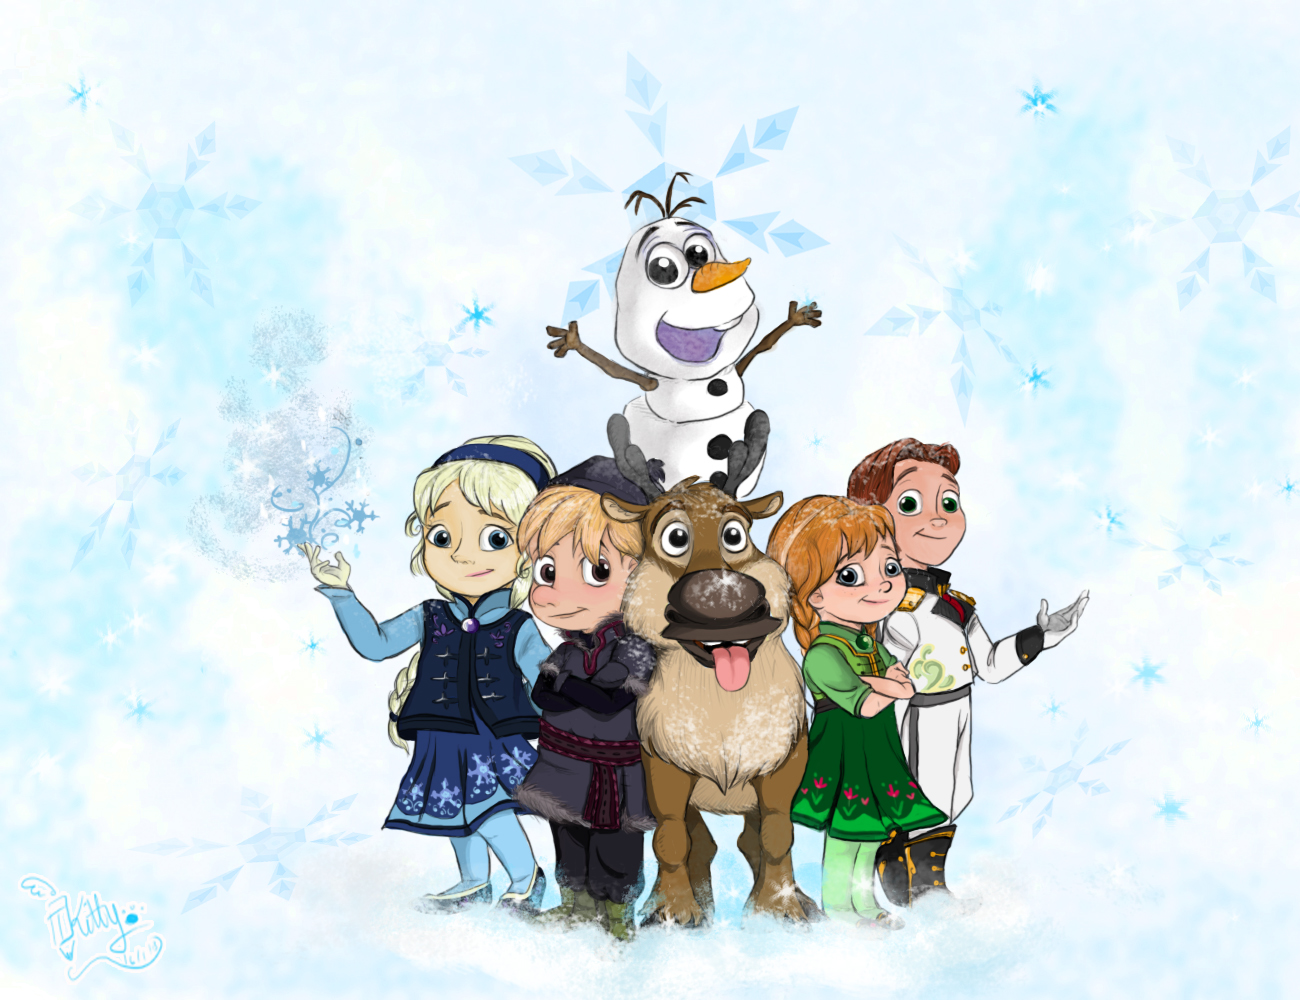 Anna Frozen Elsa Frozen Frozen Movie Hans Frozen Kristoff Frozen Olaf Frozen Snow Sven Frozen 1300x1000